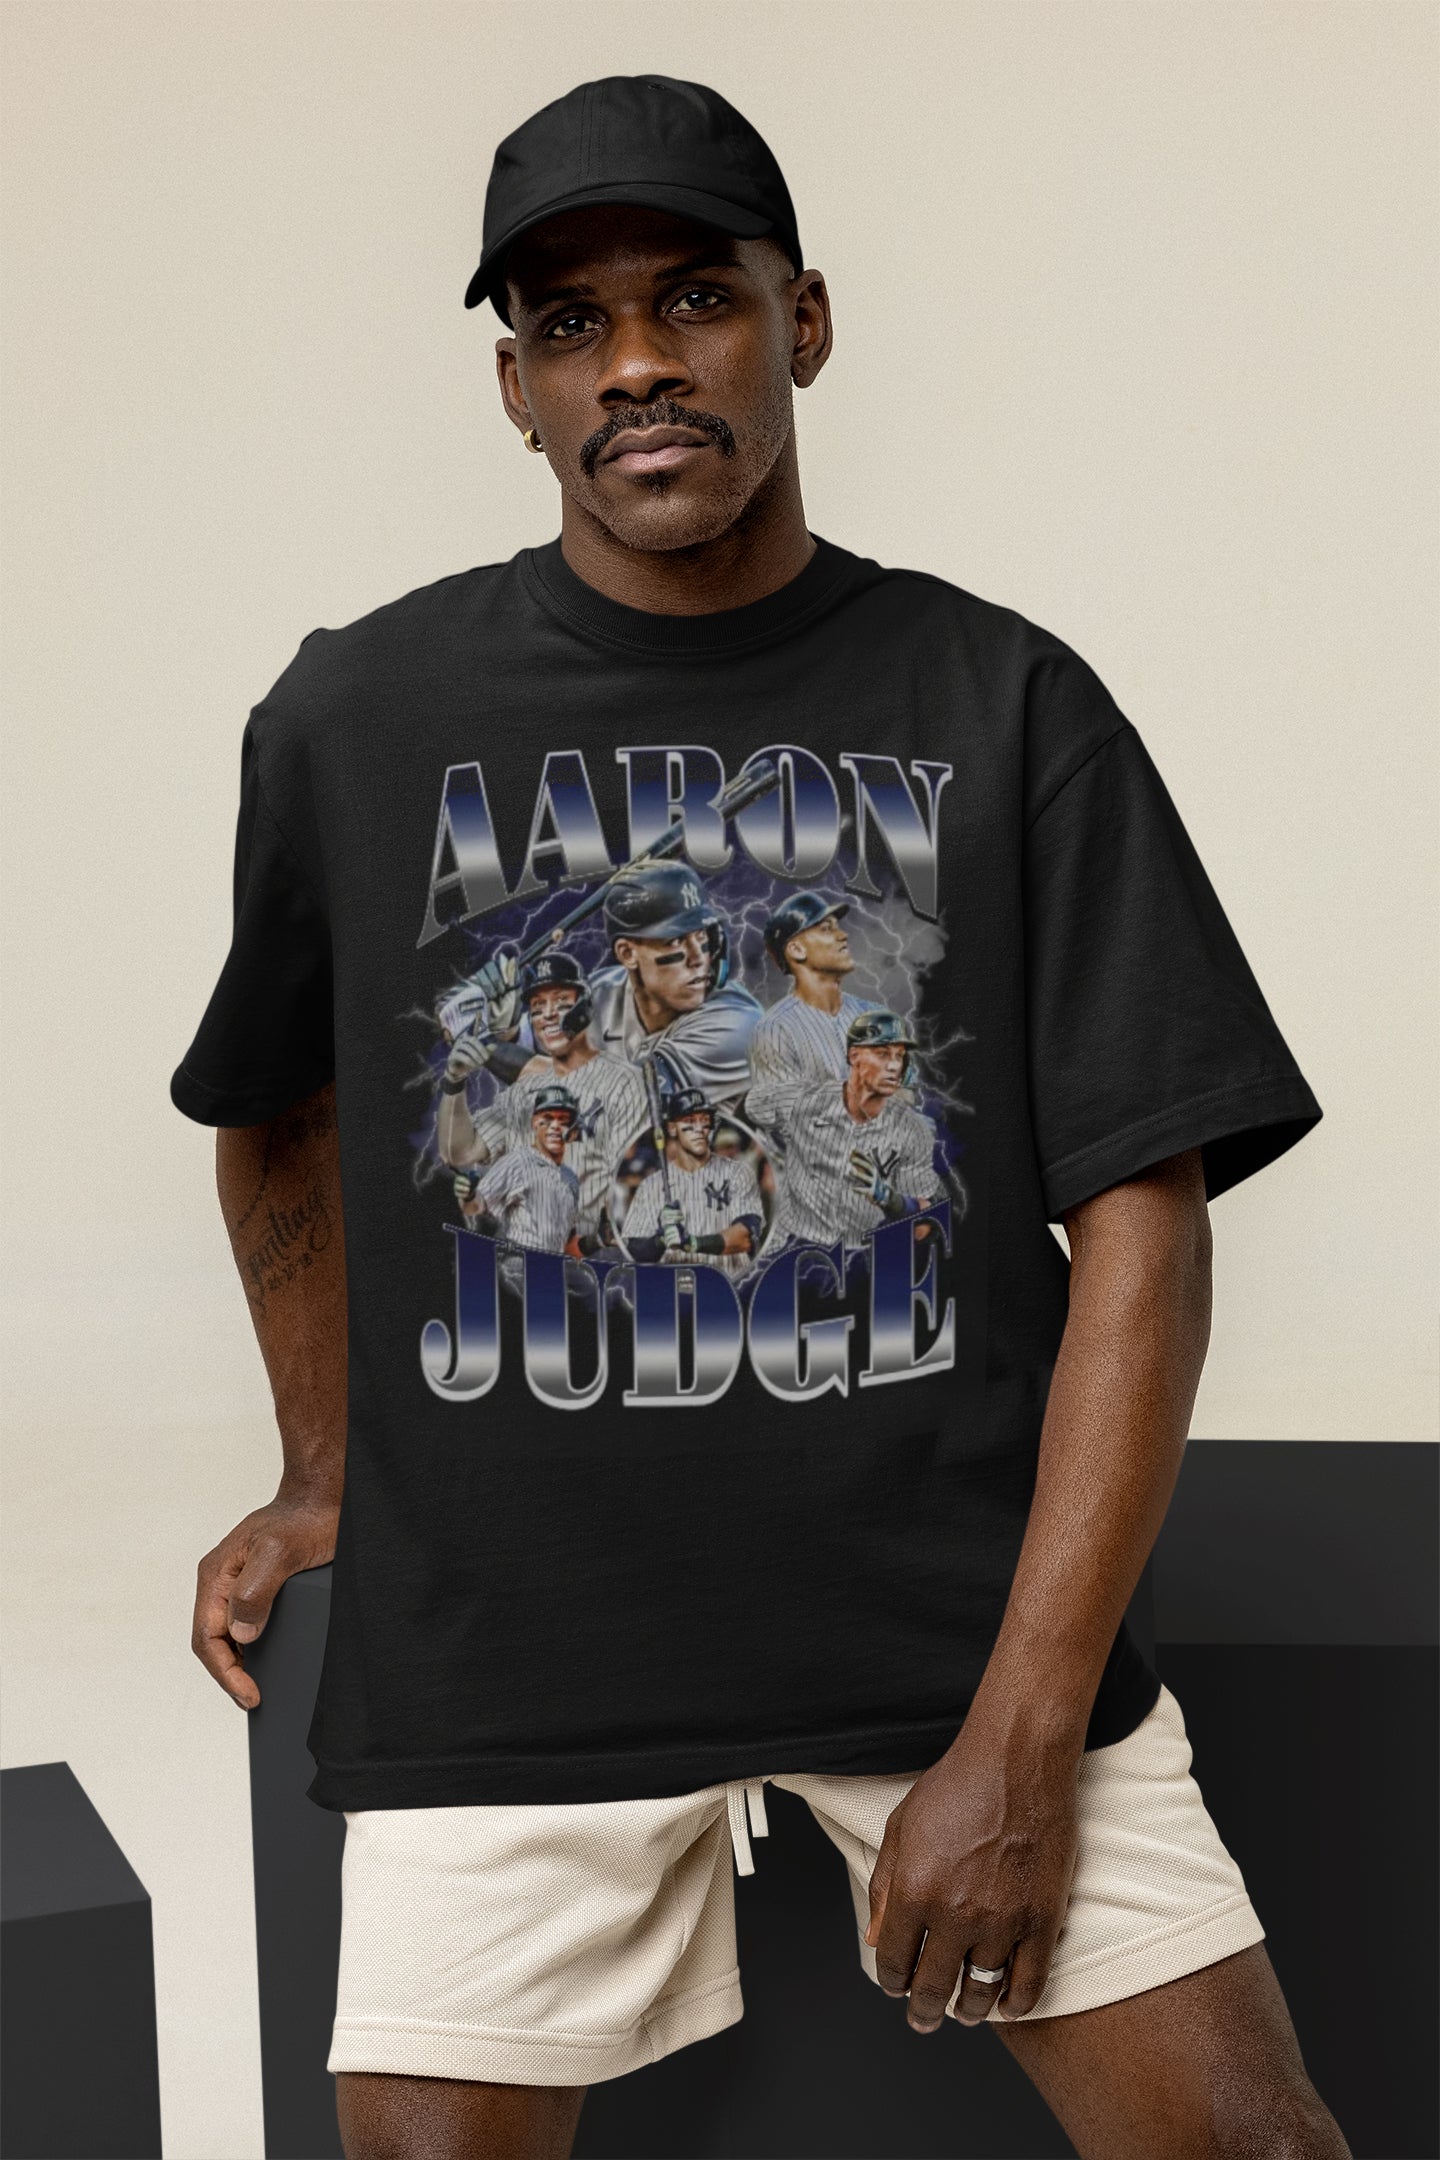 Aaron Judge - Aaron Judge - T-Shirt